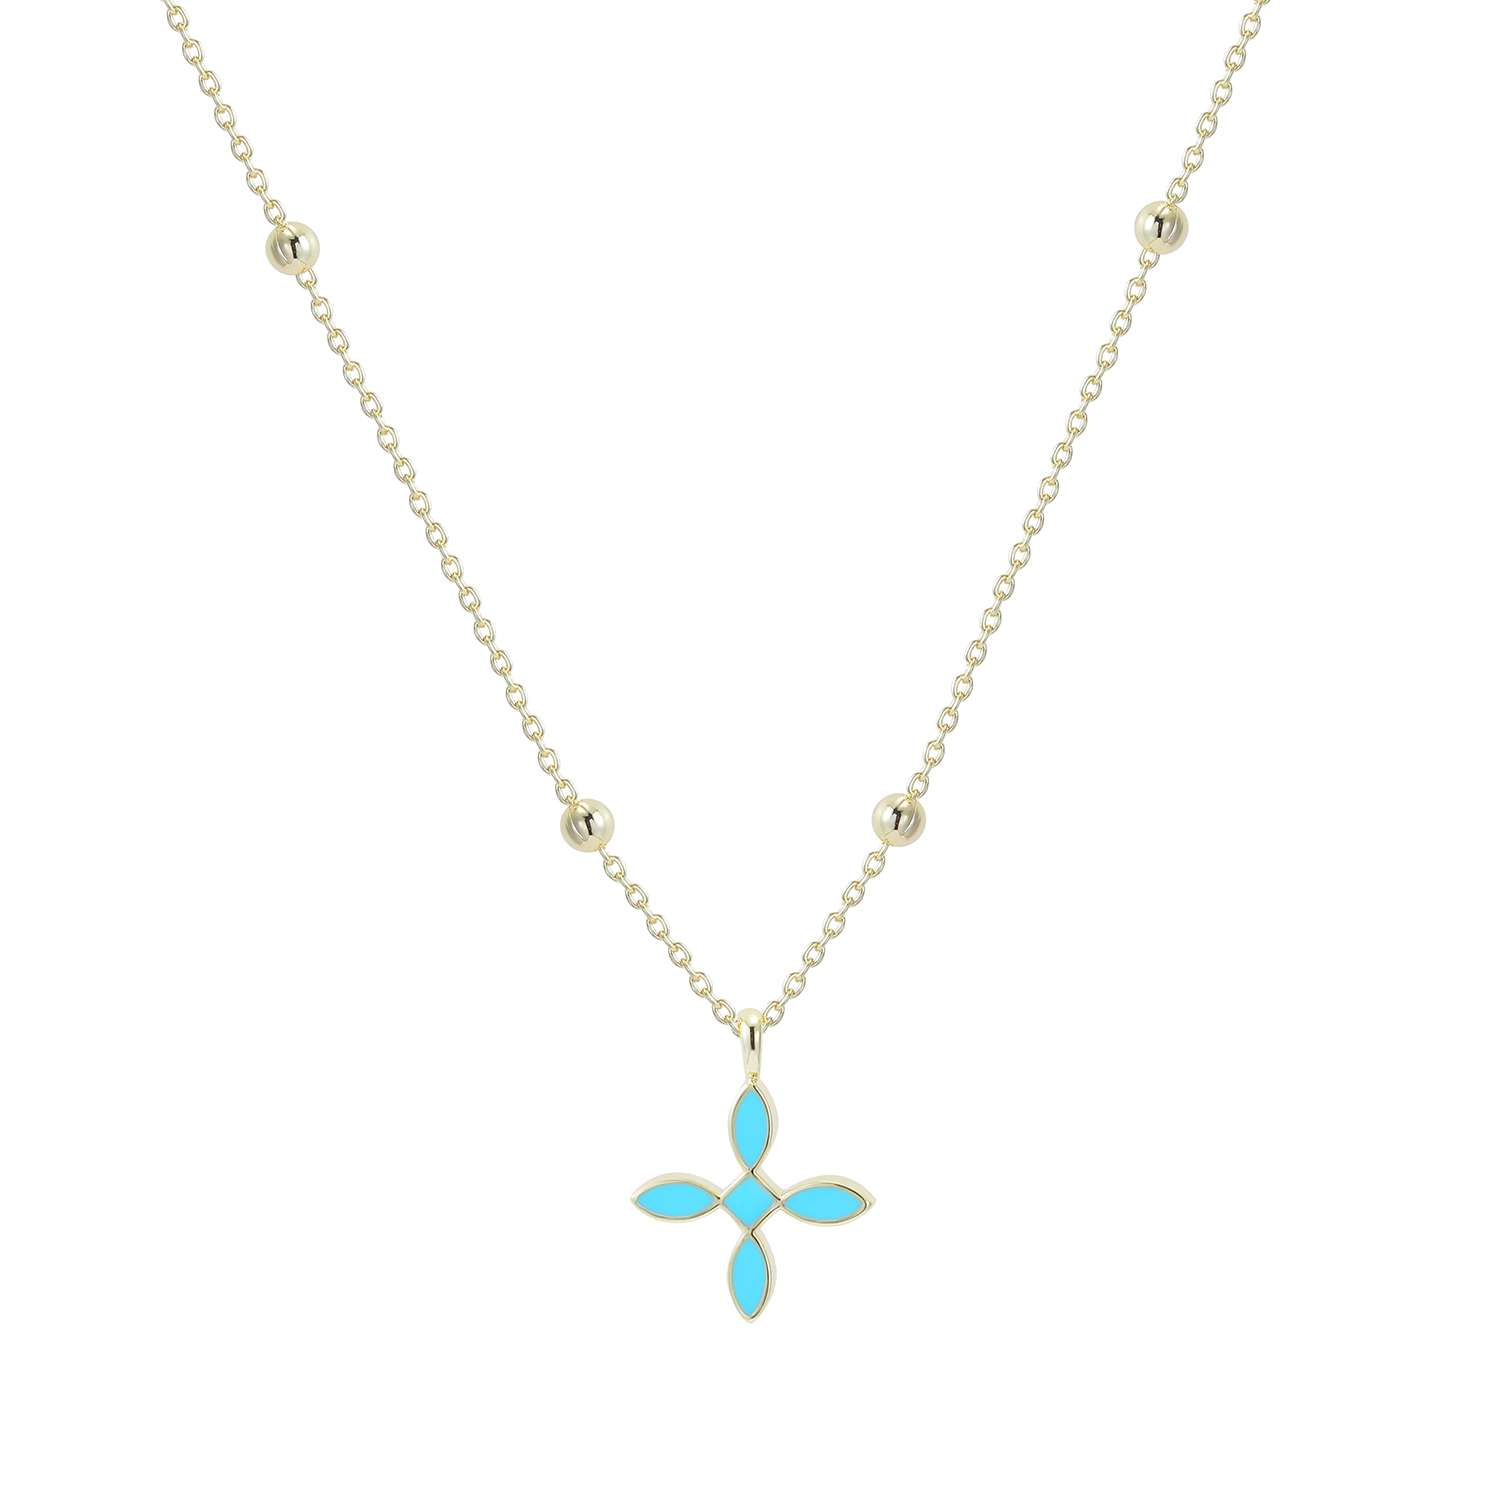 Enamel Cross Drop Necklace in Light Blue